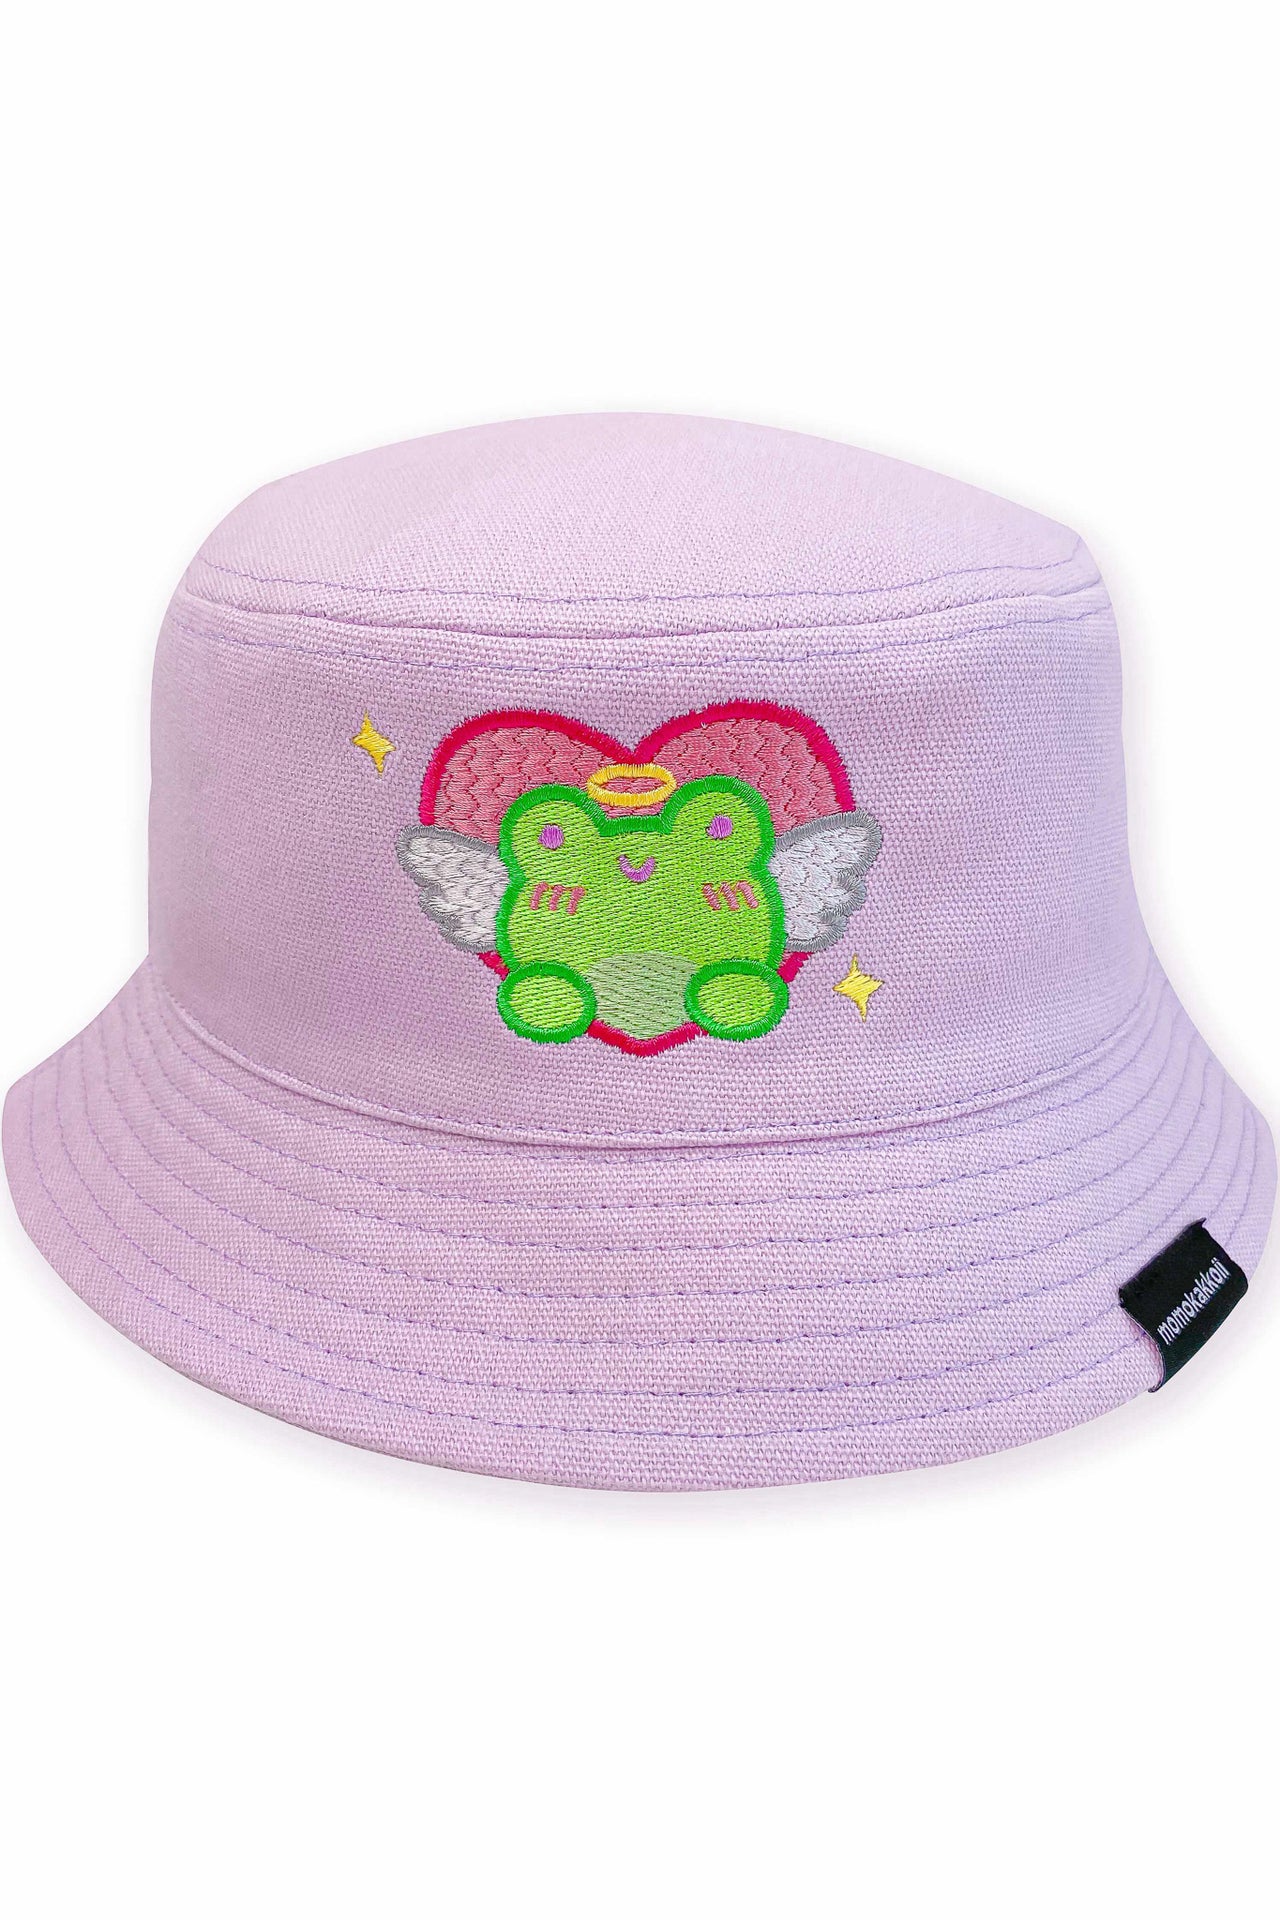 Albert the Frog Angel Embroidered Bucket Hat - Momokakkoii